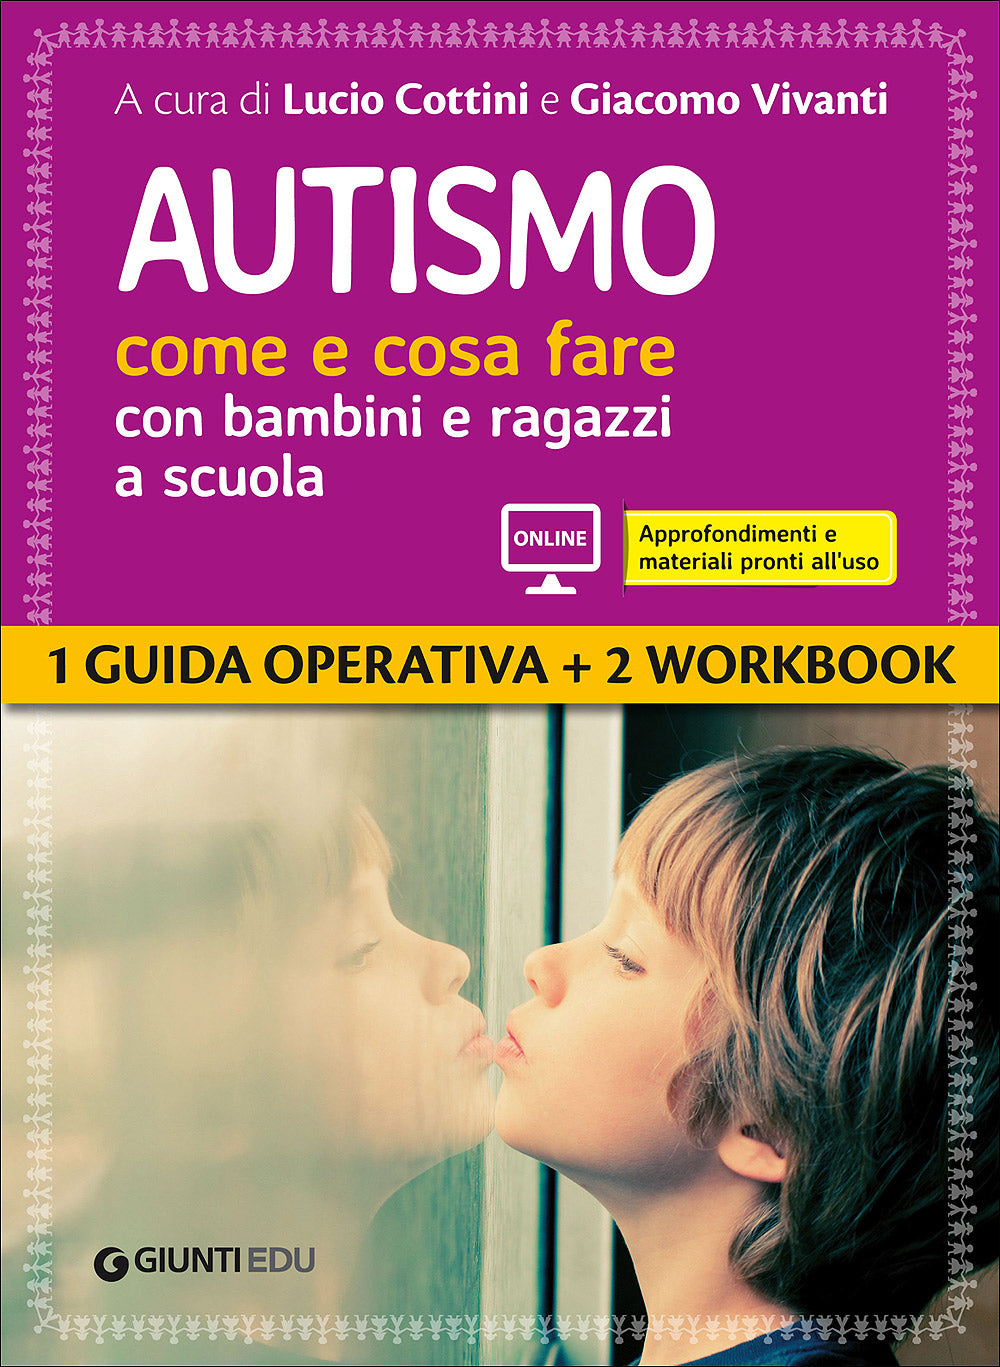 Autismo come e cosa fare con bambini e ragazzi a scuola. 1 Guida operativa e 2 Workbook - Espansioni on line